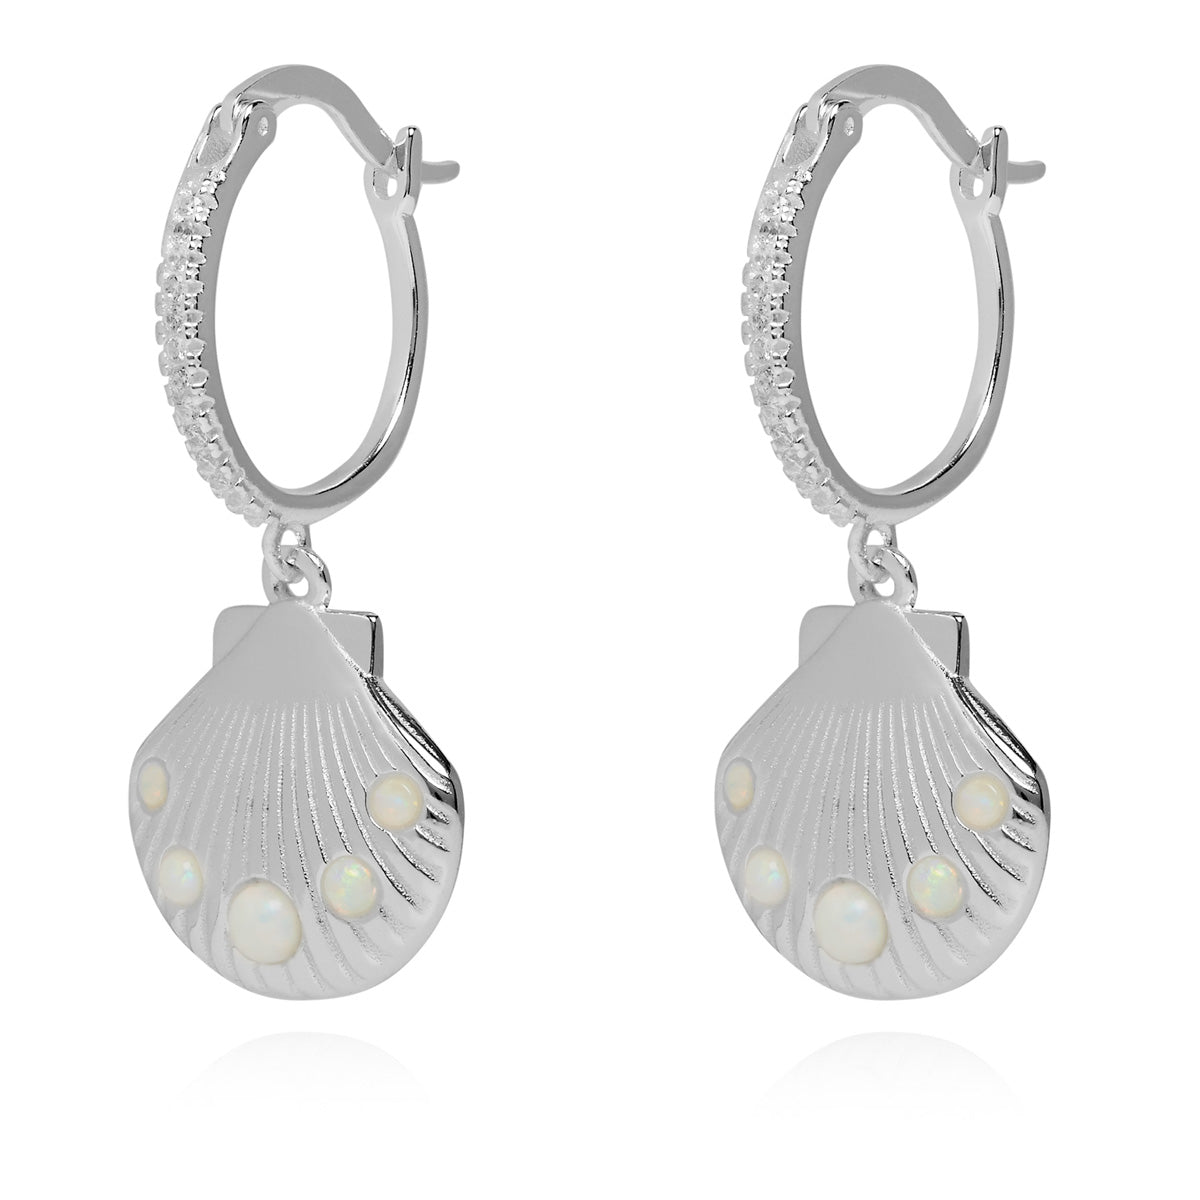 Encrusted Shell Charm Hoop Earrings Silver